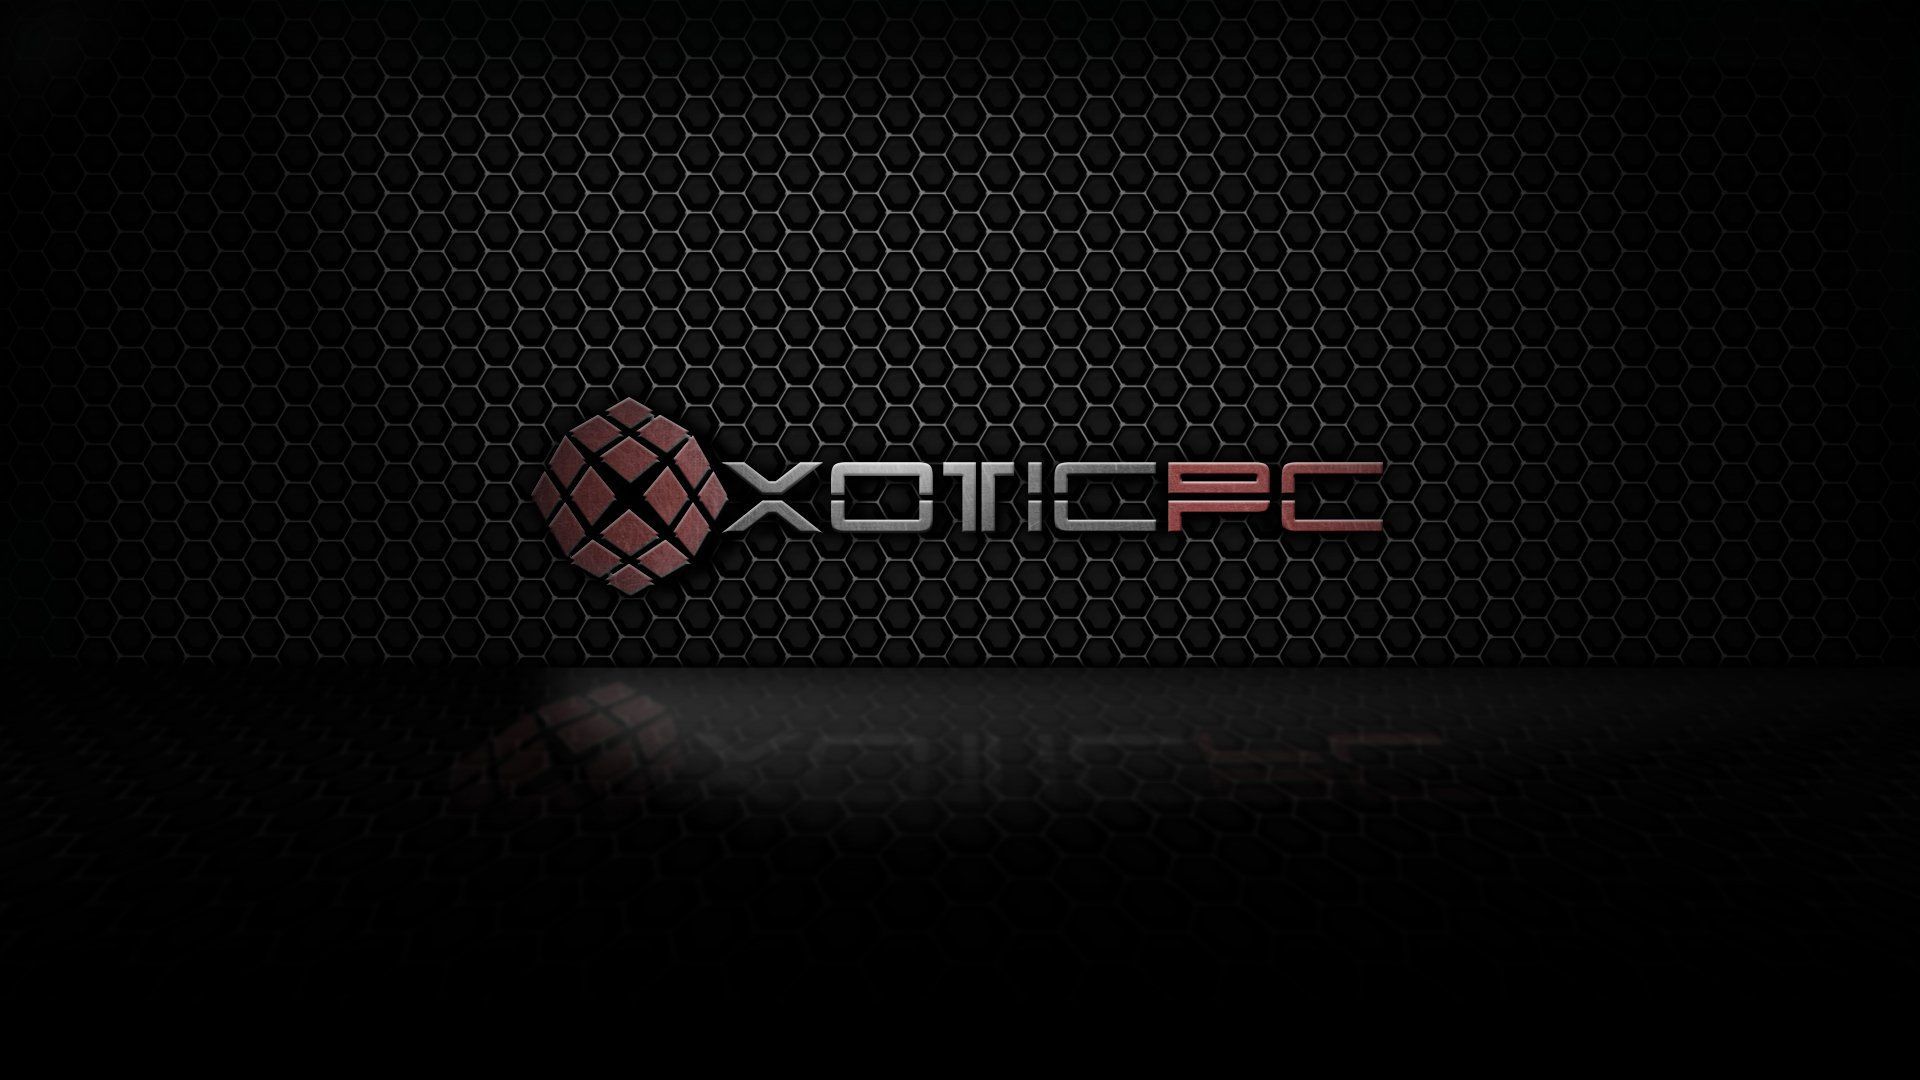 XOTIC-PC GAMING computer xotic wallpaper | 1920x1080 | 400959 ...